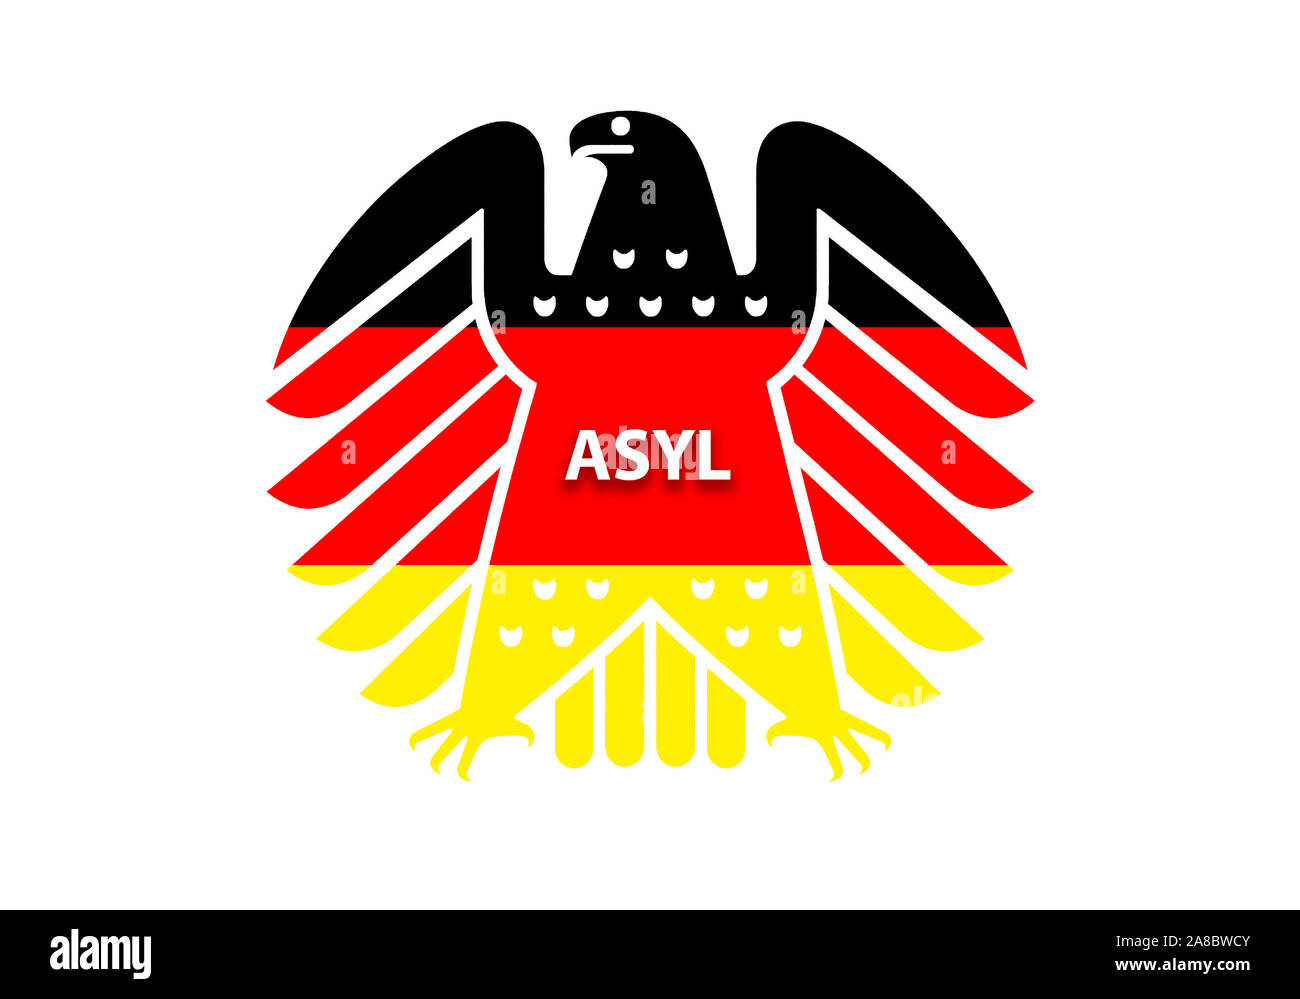 Neuer Bundesadler in den Farben schwarz-rot-gold, Wappentier der Bundesrepublik Deutschland, Inschrift:  ASYL, Stock Photo